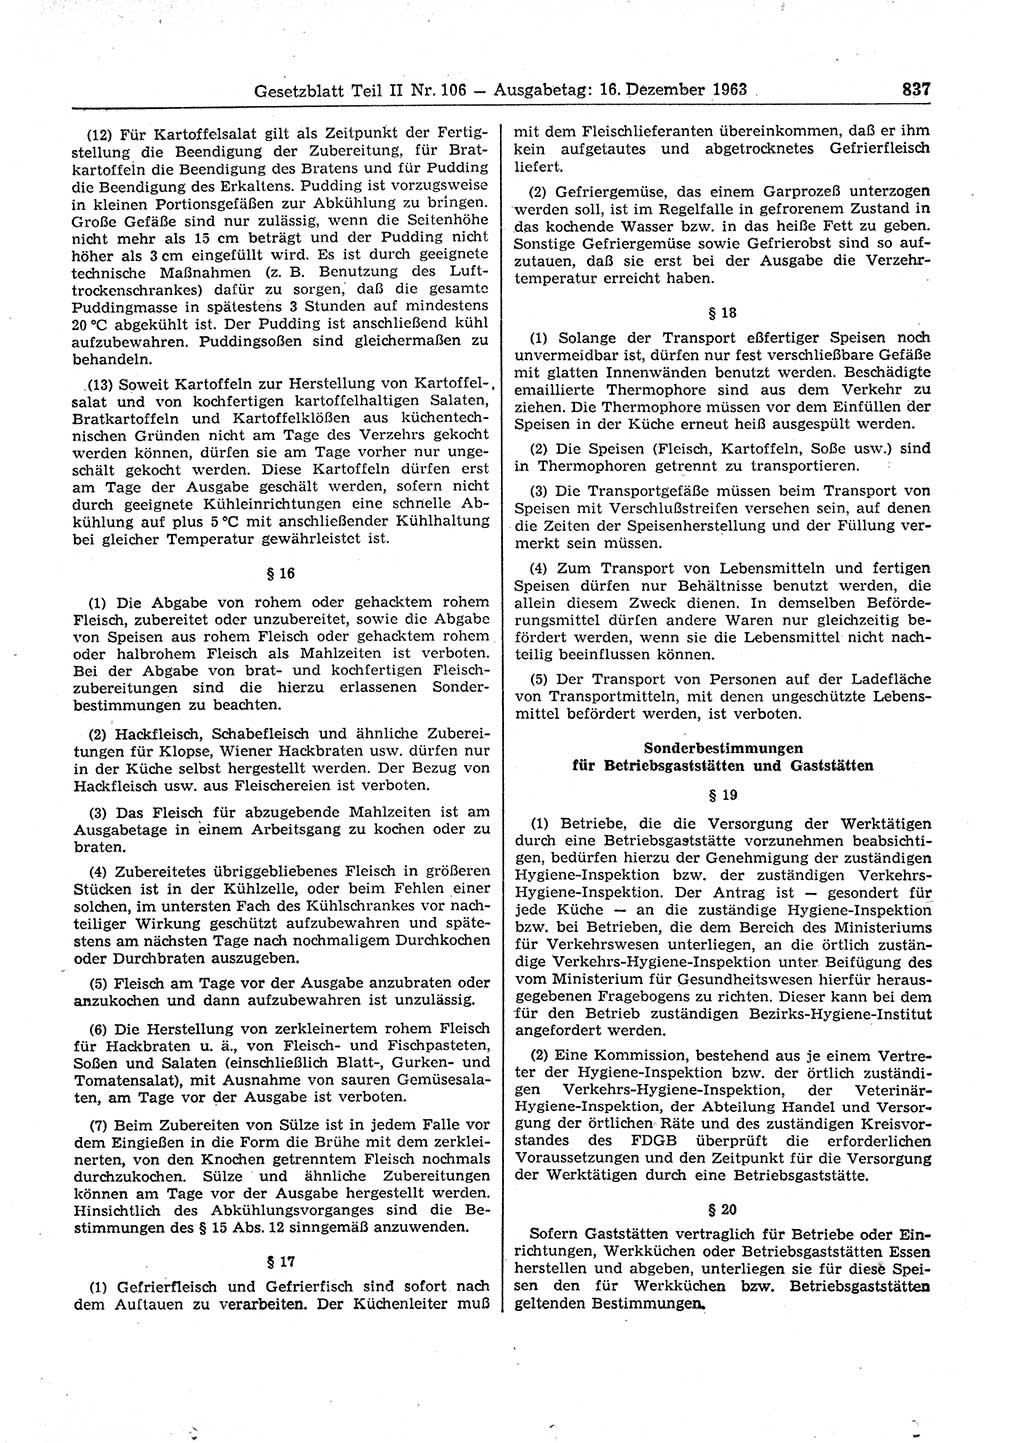 Gesetzblatt (GBl.) der Deutschen Demokratischen Republik (DDR) Teil ⅠⅠ 1963, Seite 837 (GBl. DDR ⅠⅠ 1963, S. 837)